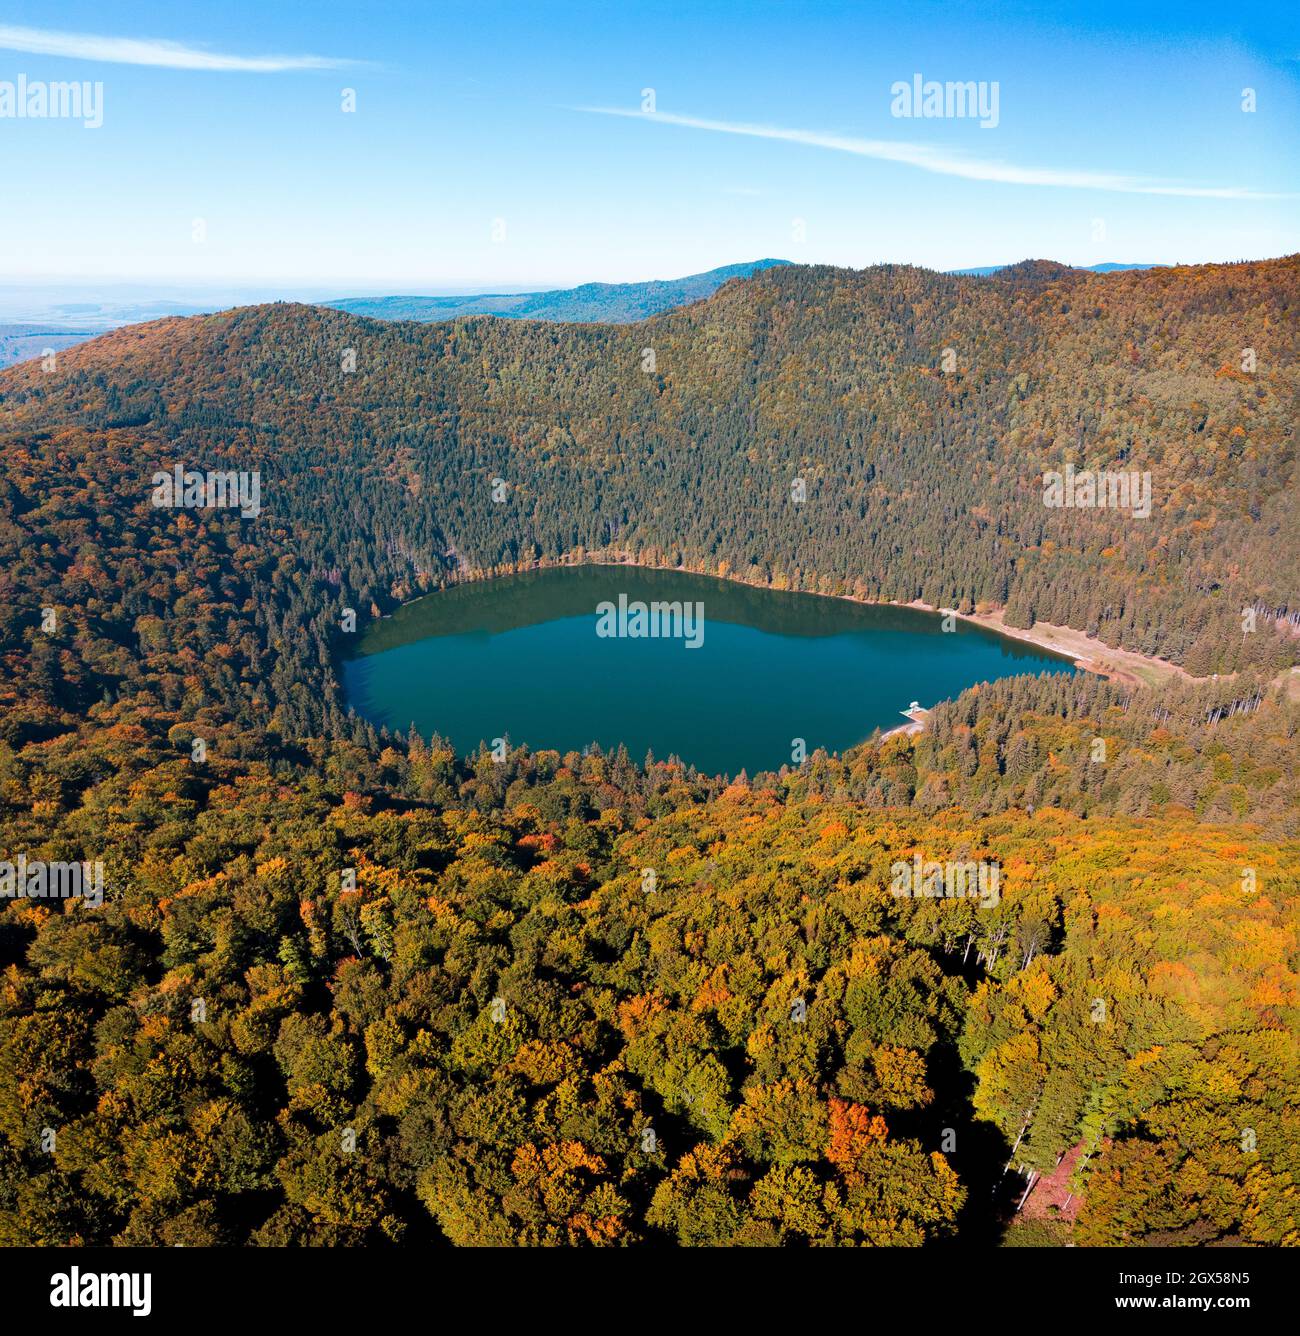 Vue panoramique sur les drones aériens de la saison d'automne sur le lac volcanique de Saint Anne (Santa Ana).Forêt et eau.Harghita, Roumanie, en automne Banque D'Images